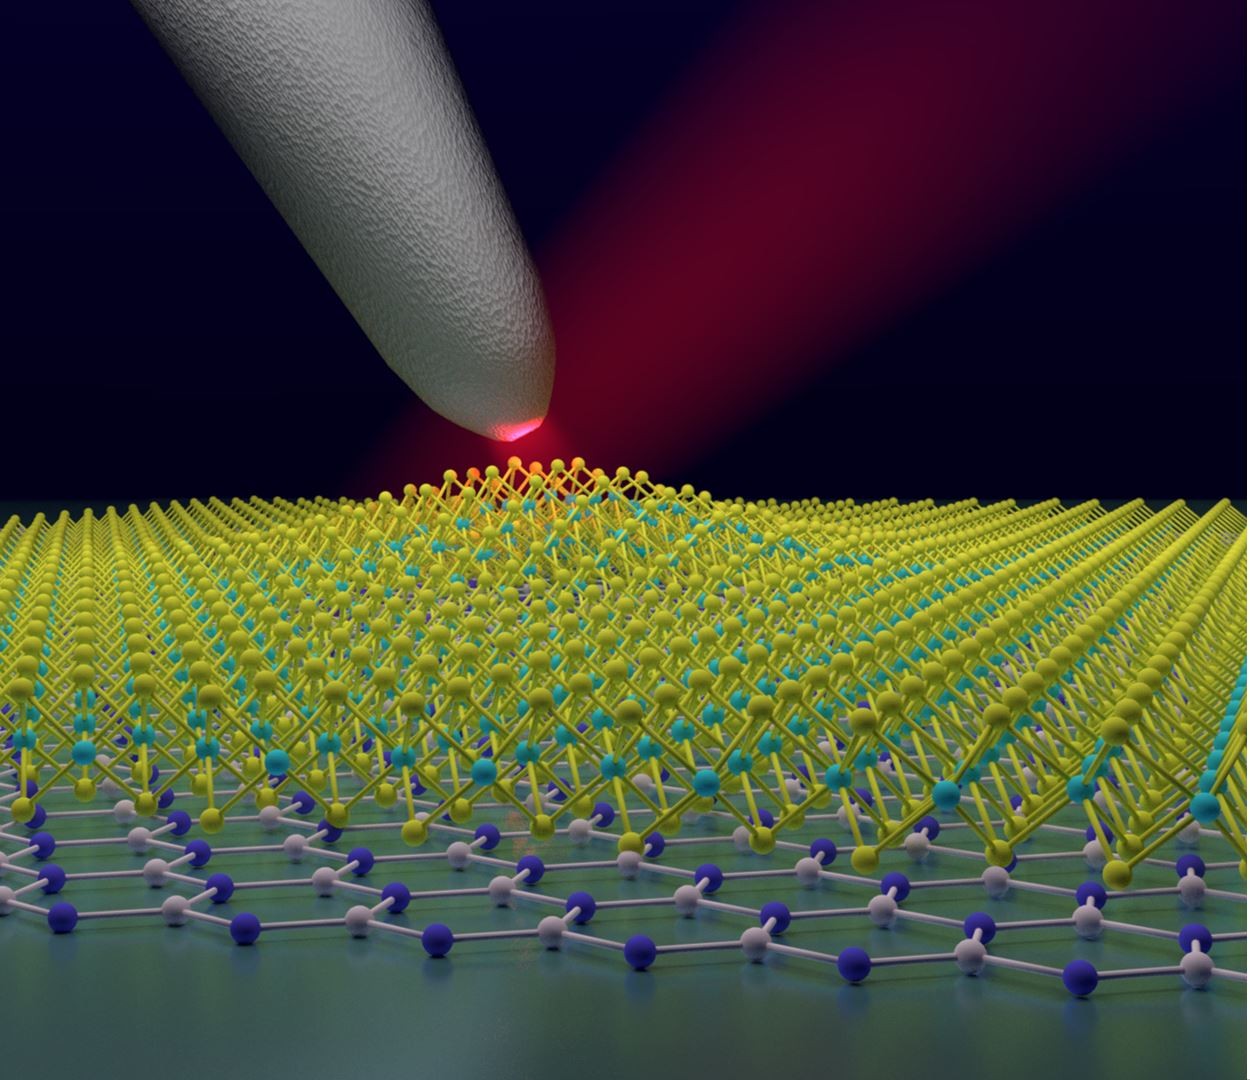 Schematic of a laser-illuminated nano-optical probe investigating a strained nanobubble of tungsten diselenide